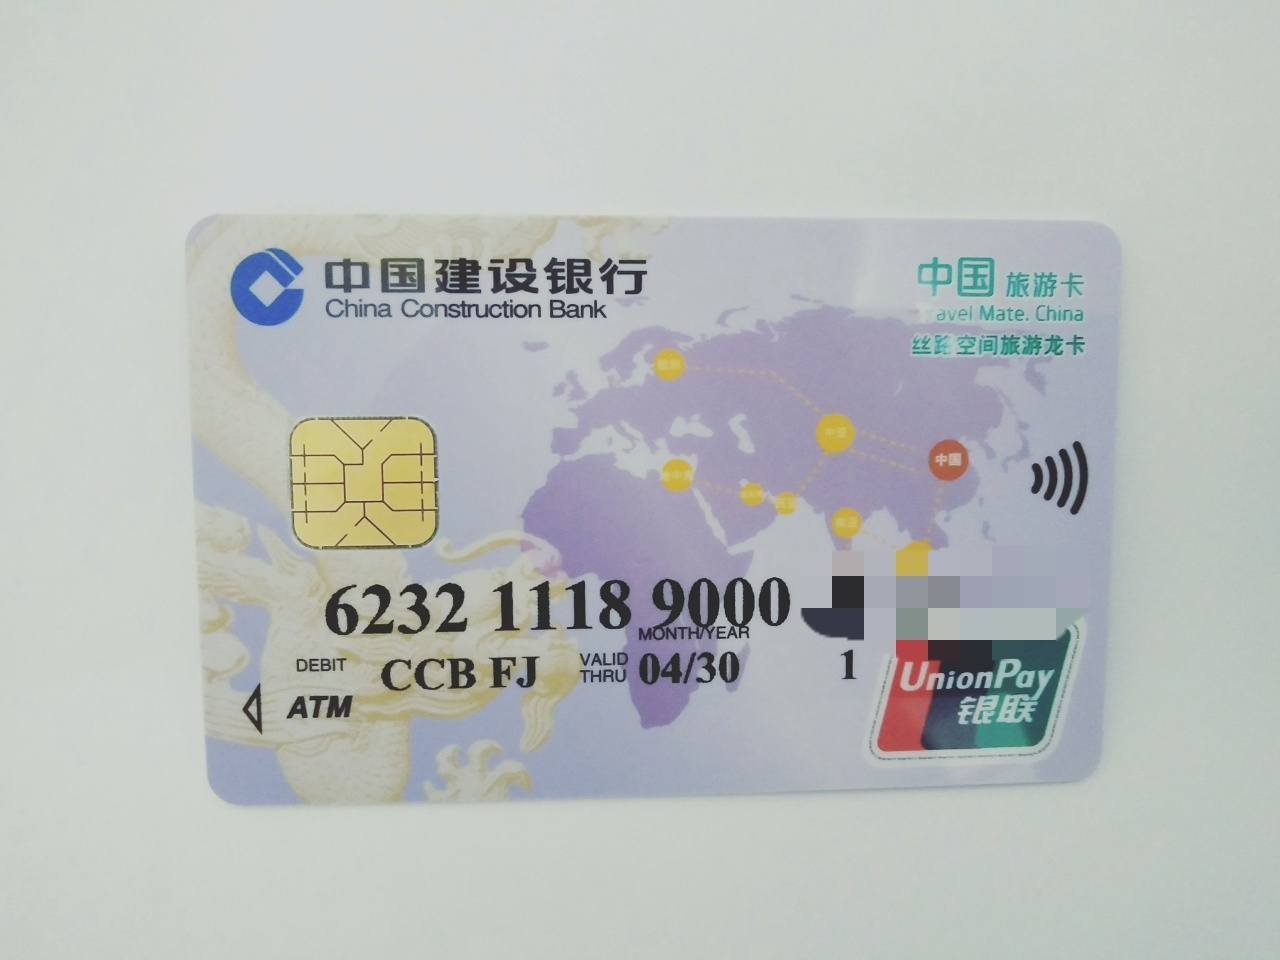 中国建设银行卡照片图片